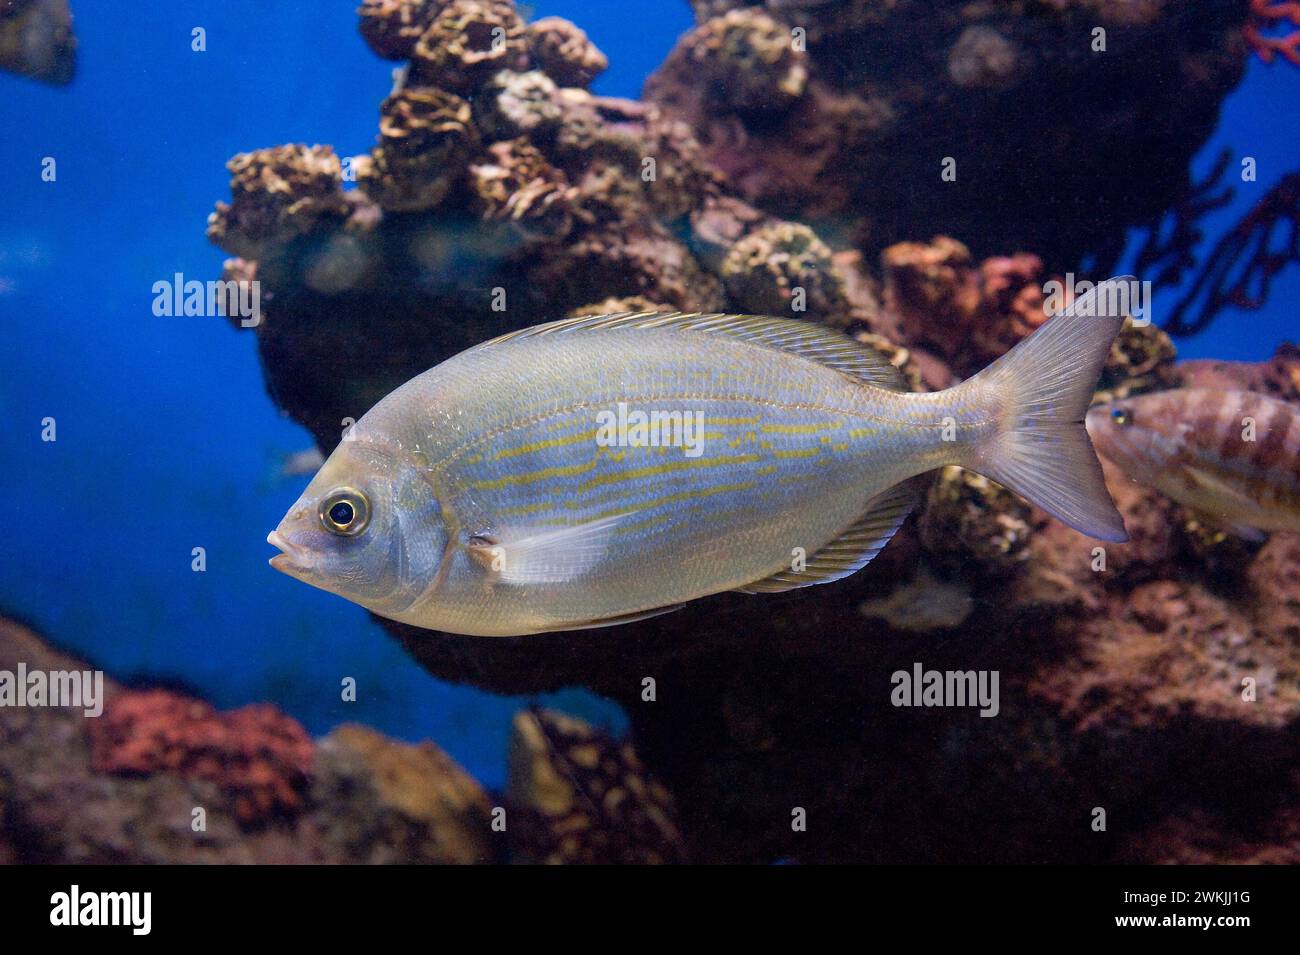 Dreamfish oder salema (Sarpa salpa) ist ein Meeresfisch, der im östlichen Atlantischen Ozean und im Mittelmeer beheimatet ist. Stockfoto